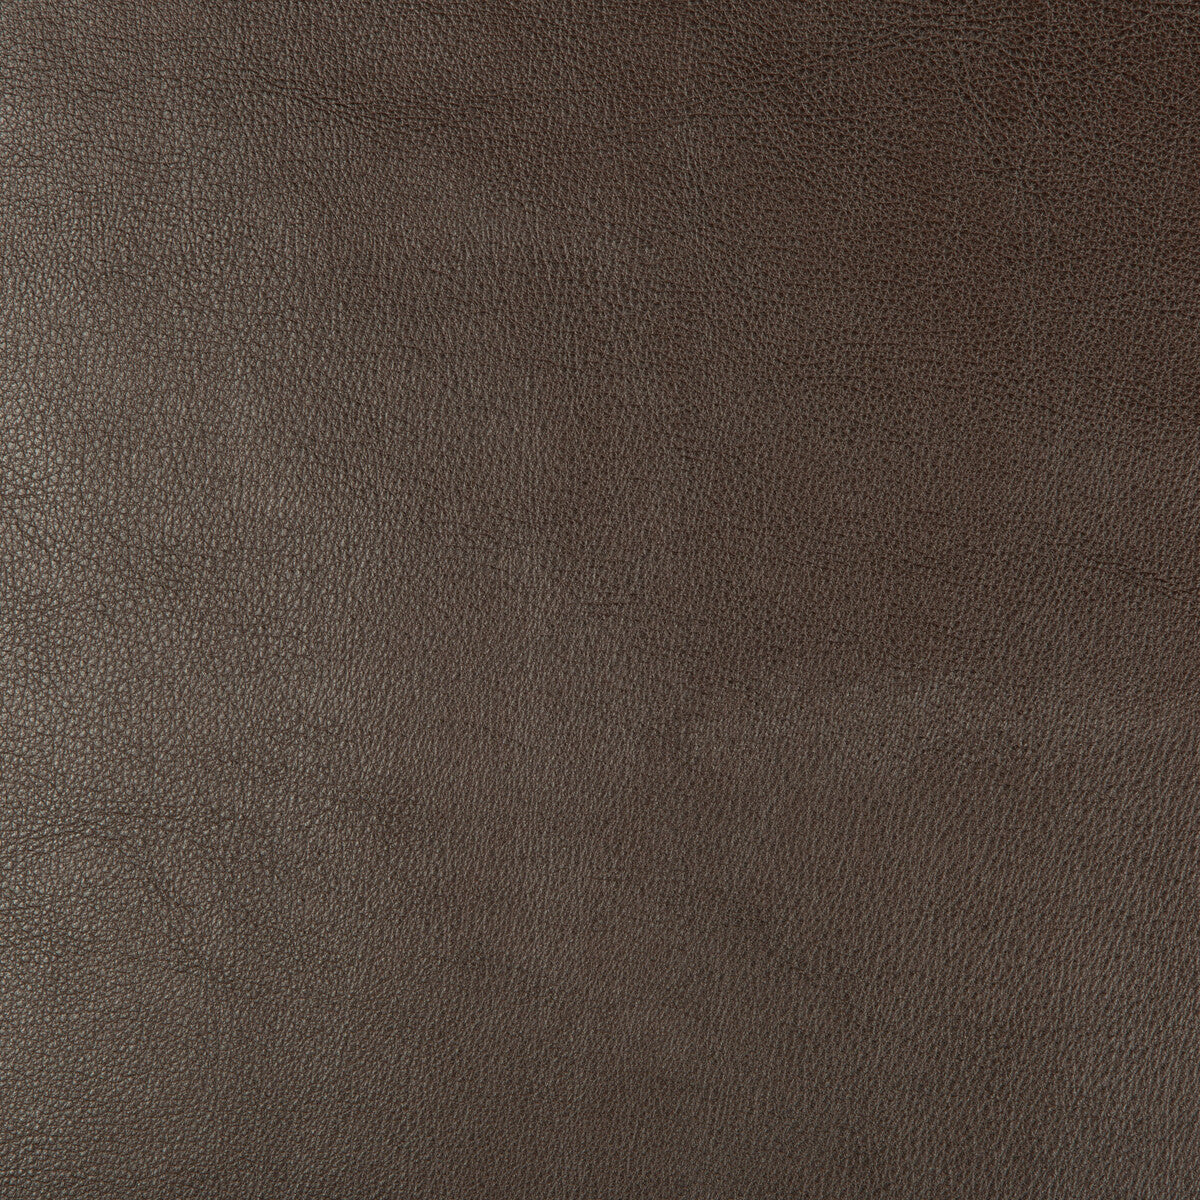 Kravet Design fabric in dust-66 color - pattern DUST.66.0 - by Kravet Design